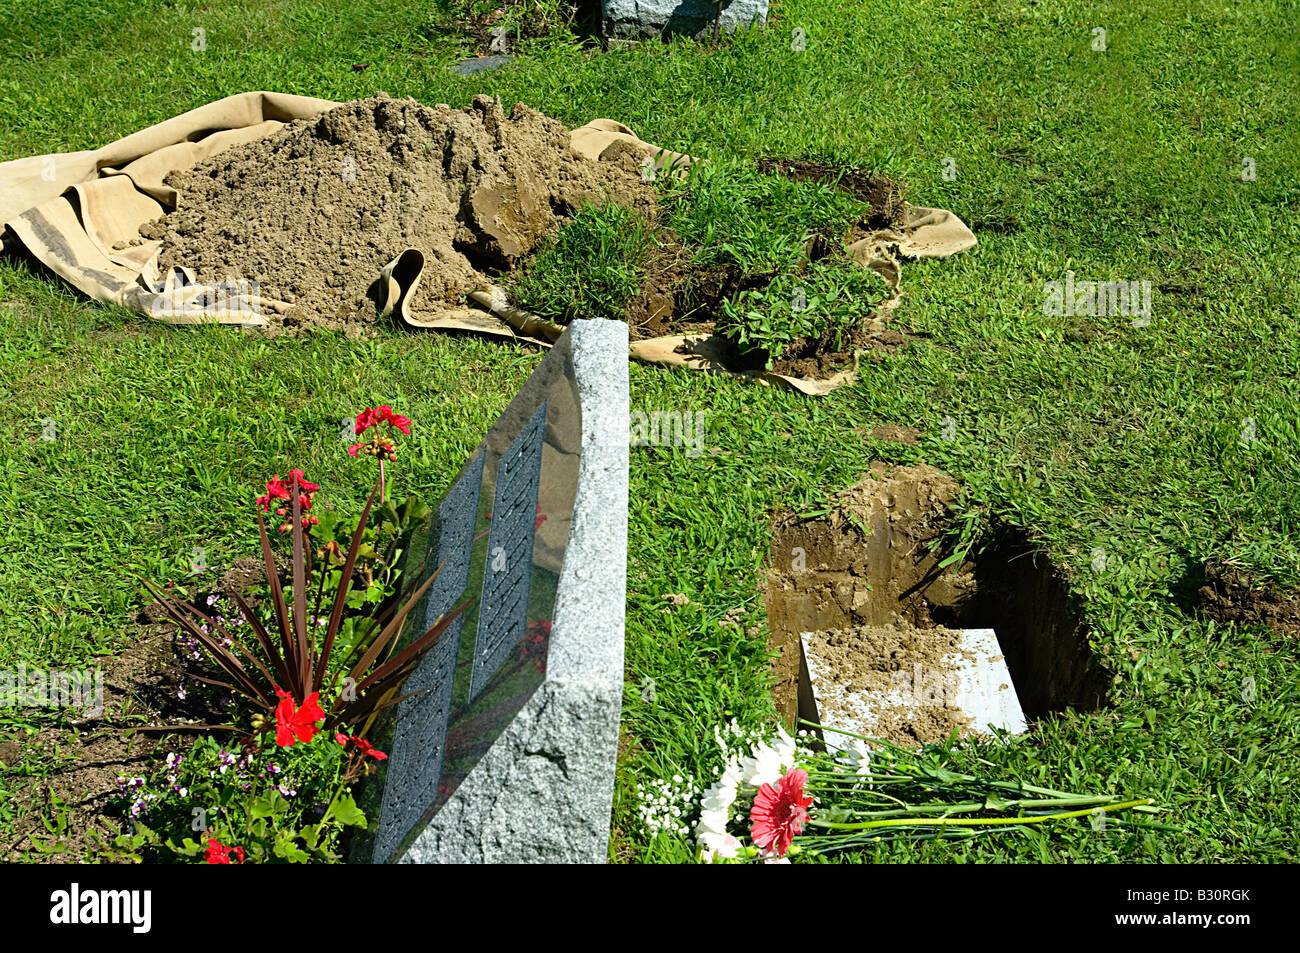 Beisetzung der Urne in Friedhof mit öffnen Grab Grabstein Blumen und Erde und Rasen auf einer Leinwand Tuch Stockfoto